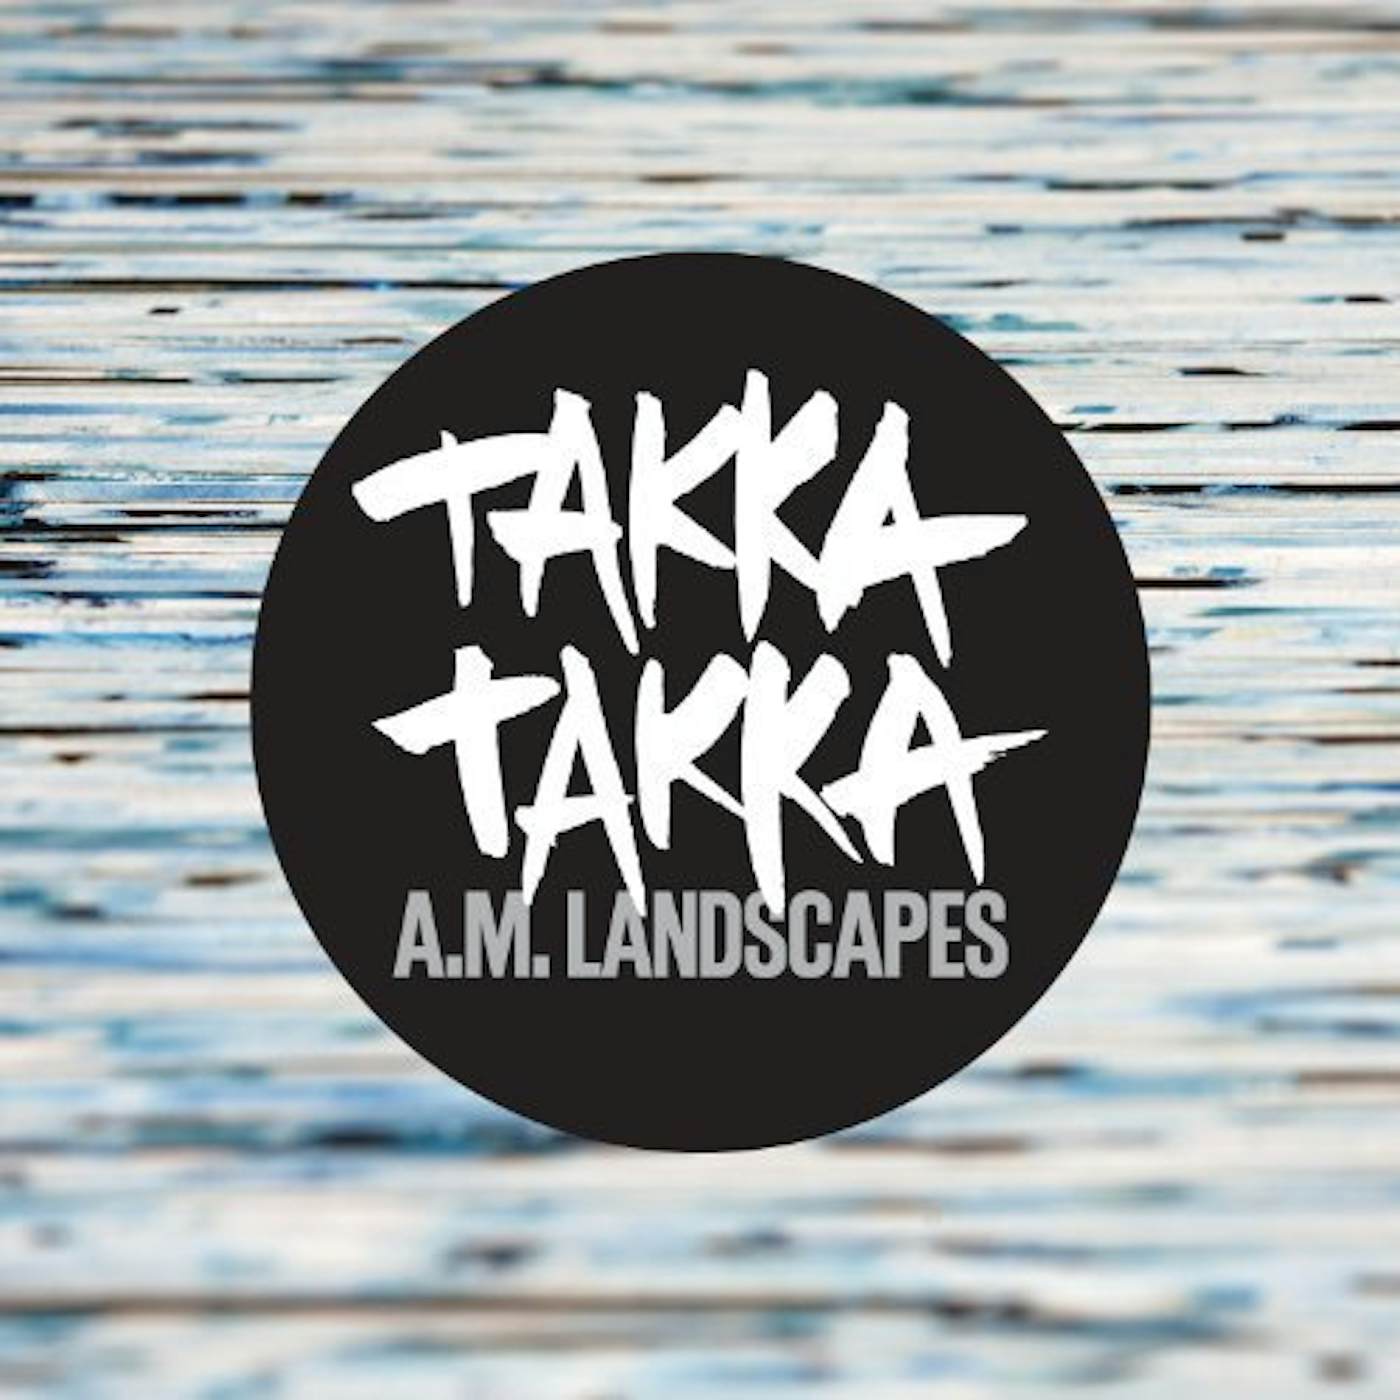 Takka Takka A.M. Landscapes Vinyl Record